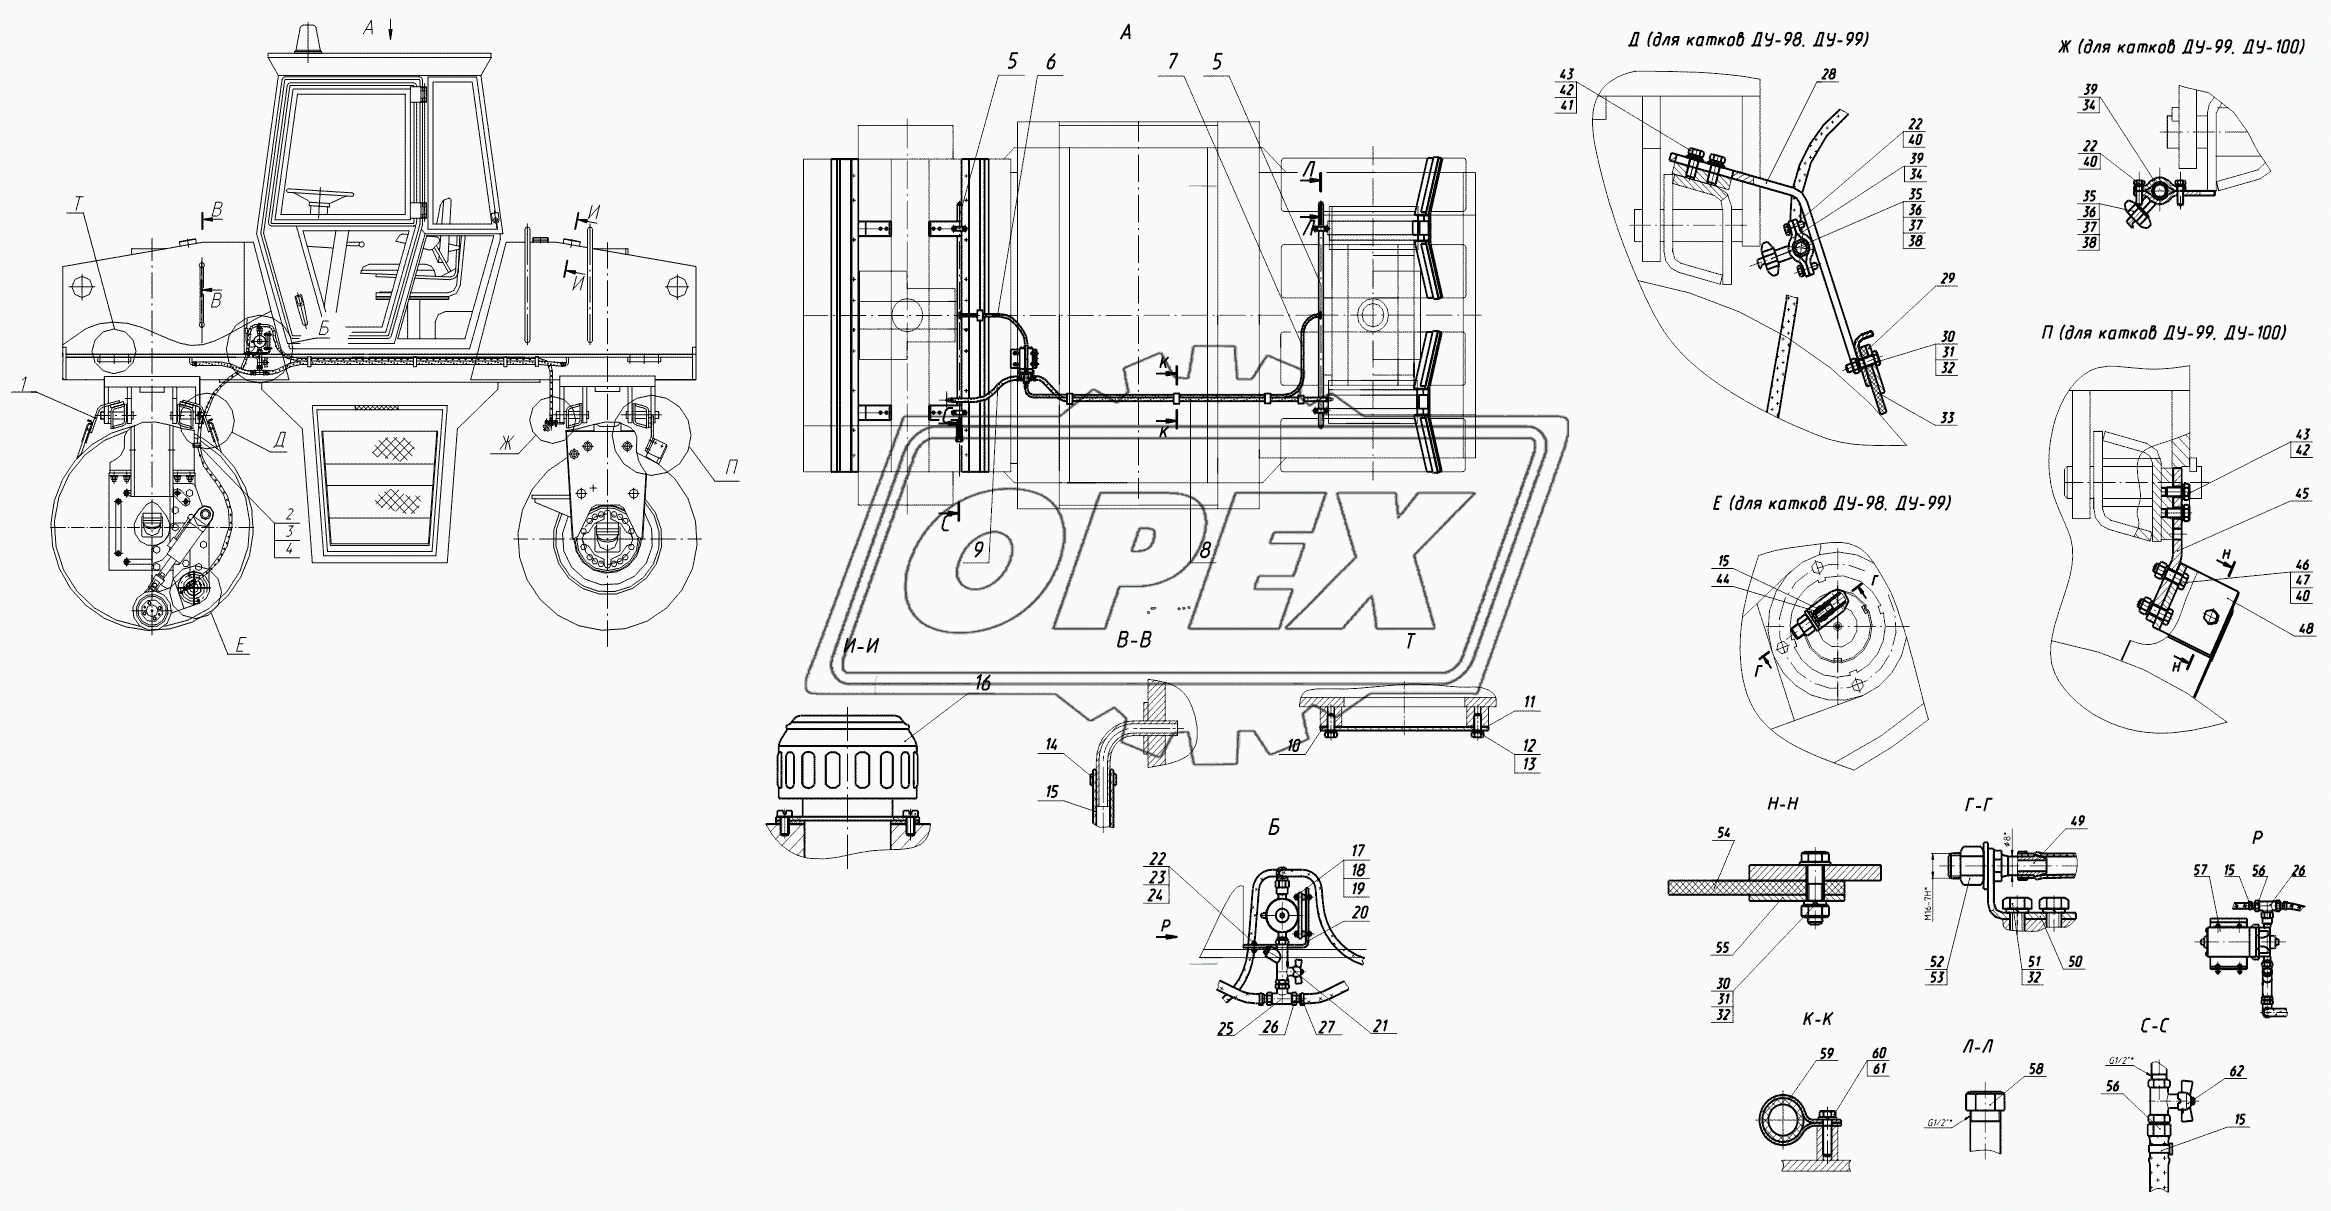 Скребки и смачивающая система катка (дано изображение катка ДУ-99), cкребки и смачивающая система катка